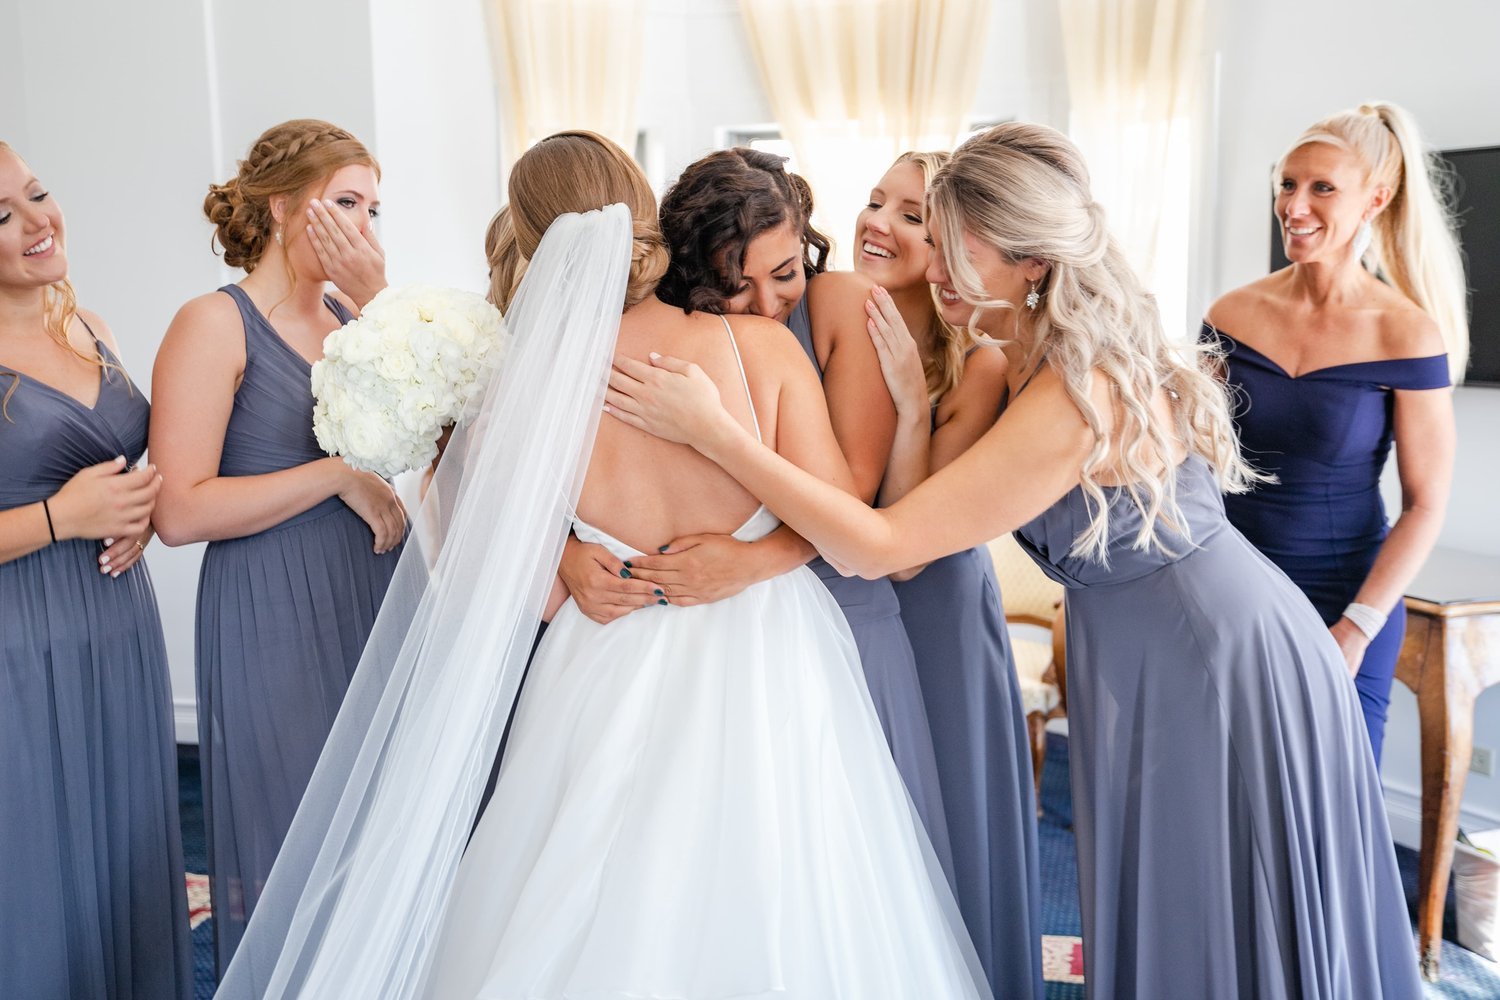 bride-and-bridesmaids-sharing-hugs.jpg